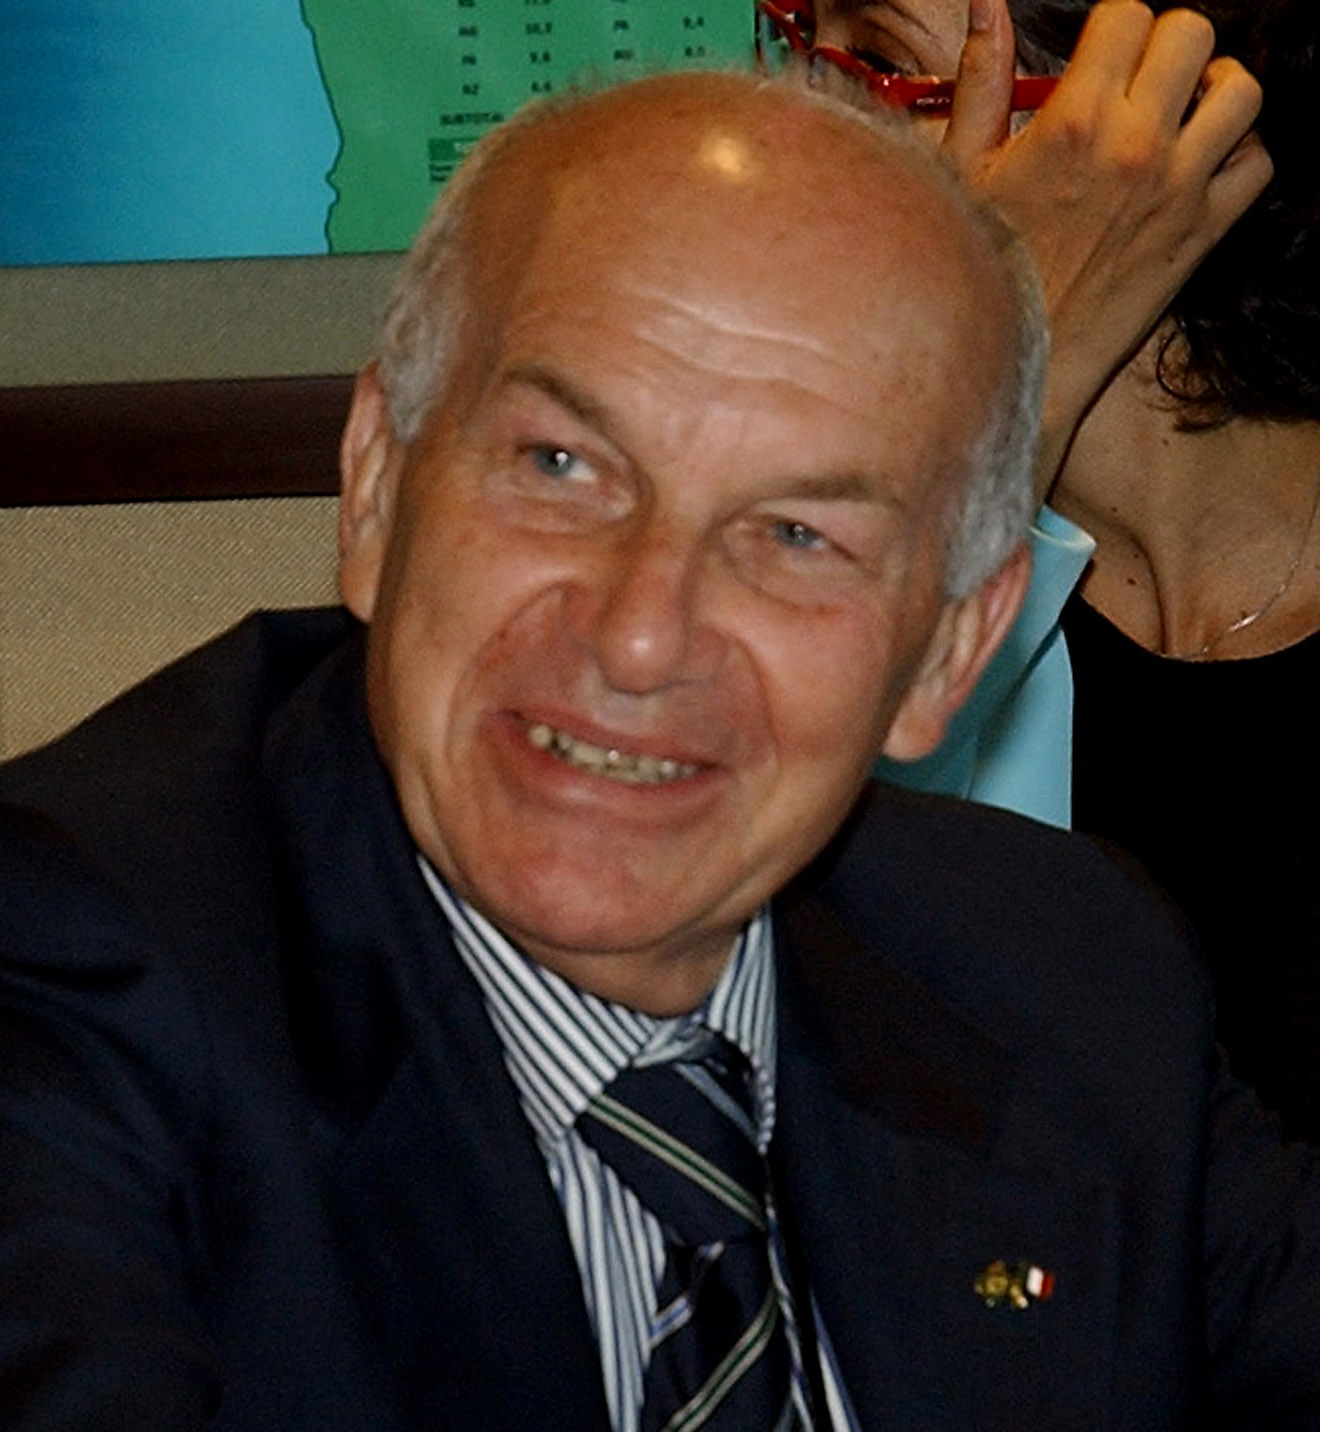 Fausto Bertinotti